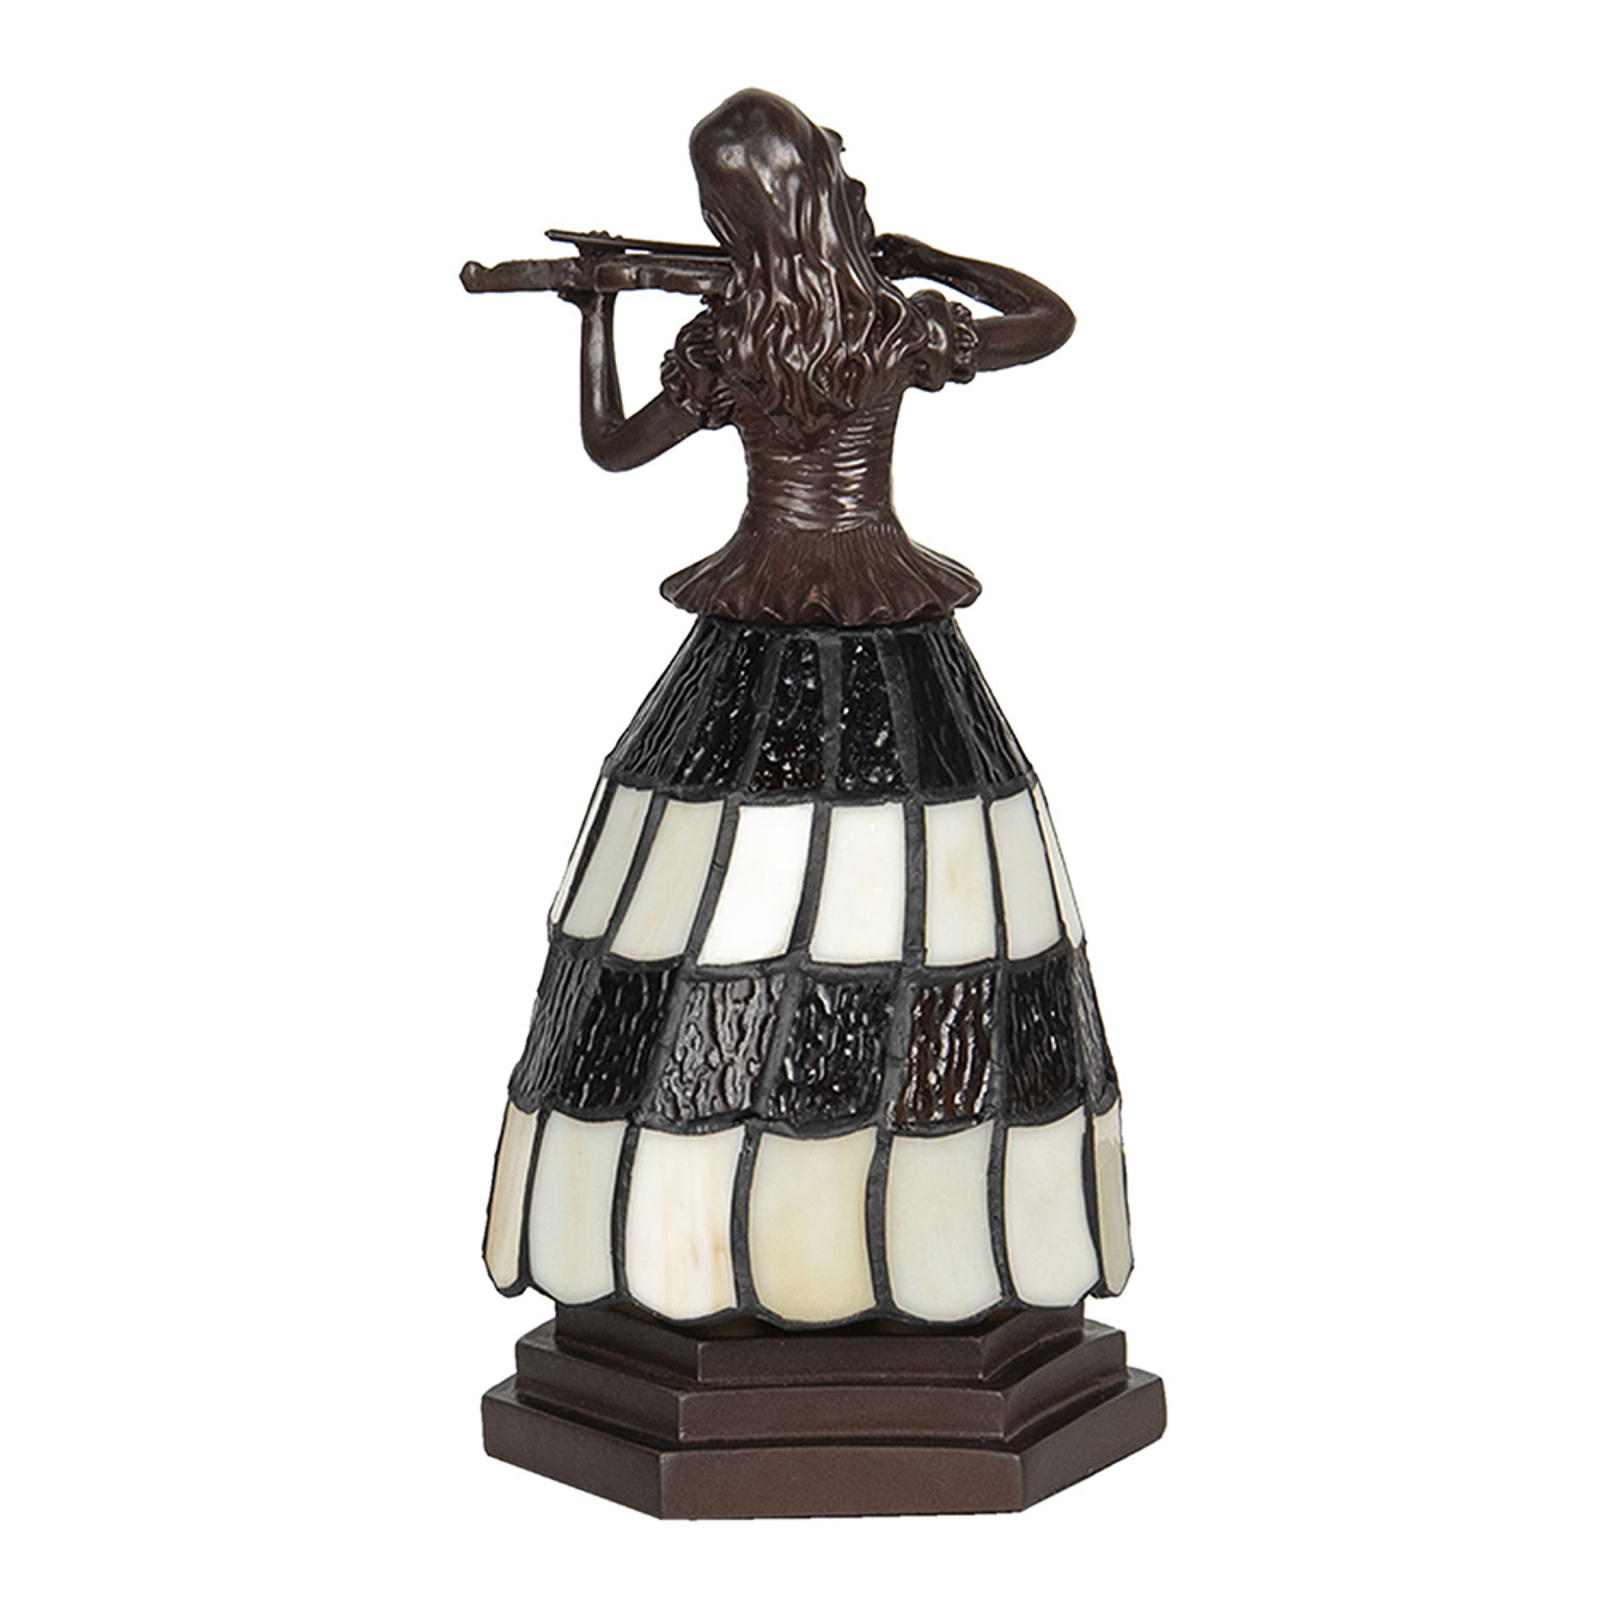 Tischlampe 5LL-6047 Frau, Tiffany-Stil, braun-weiß